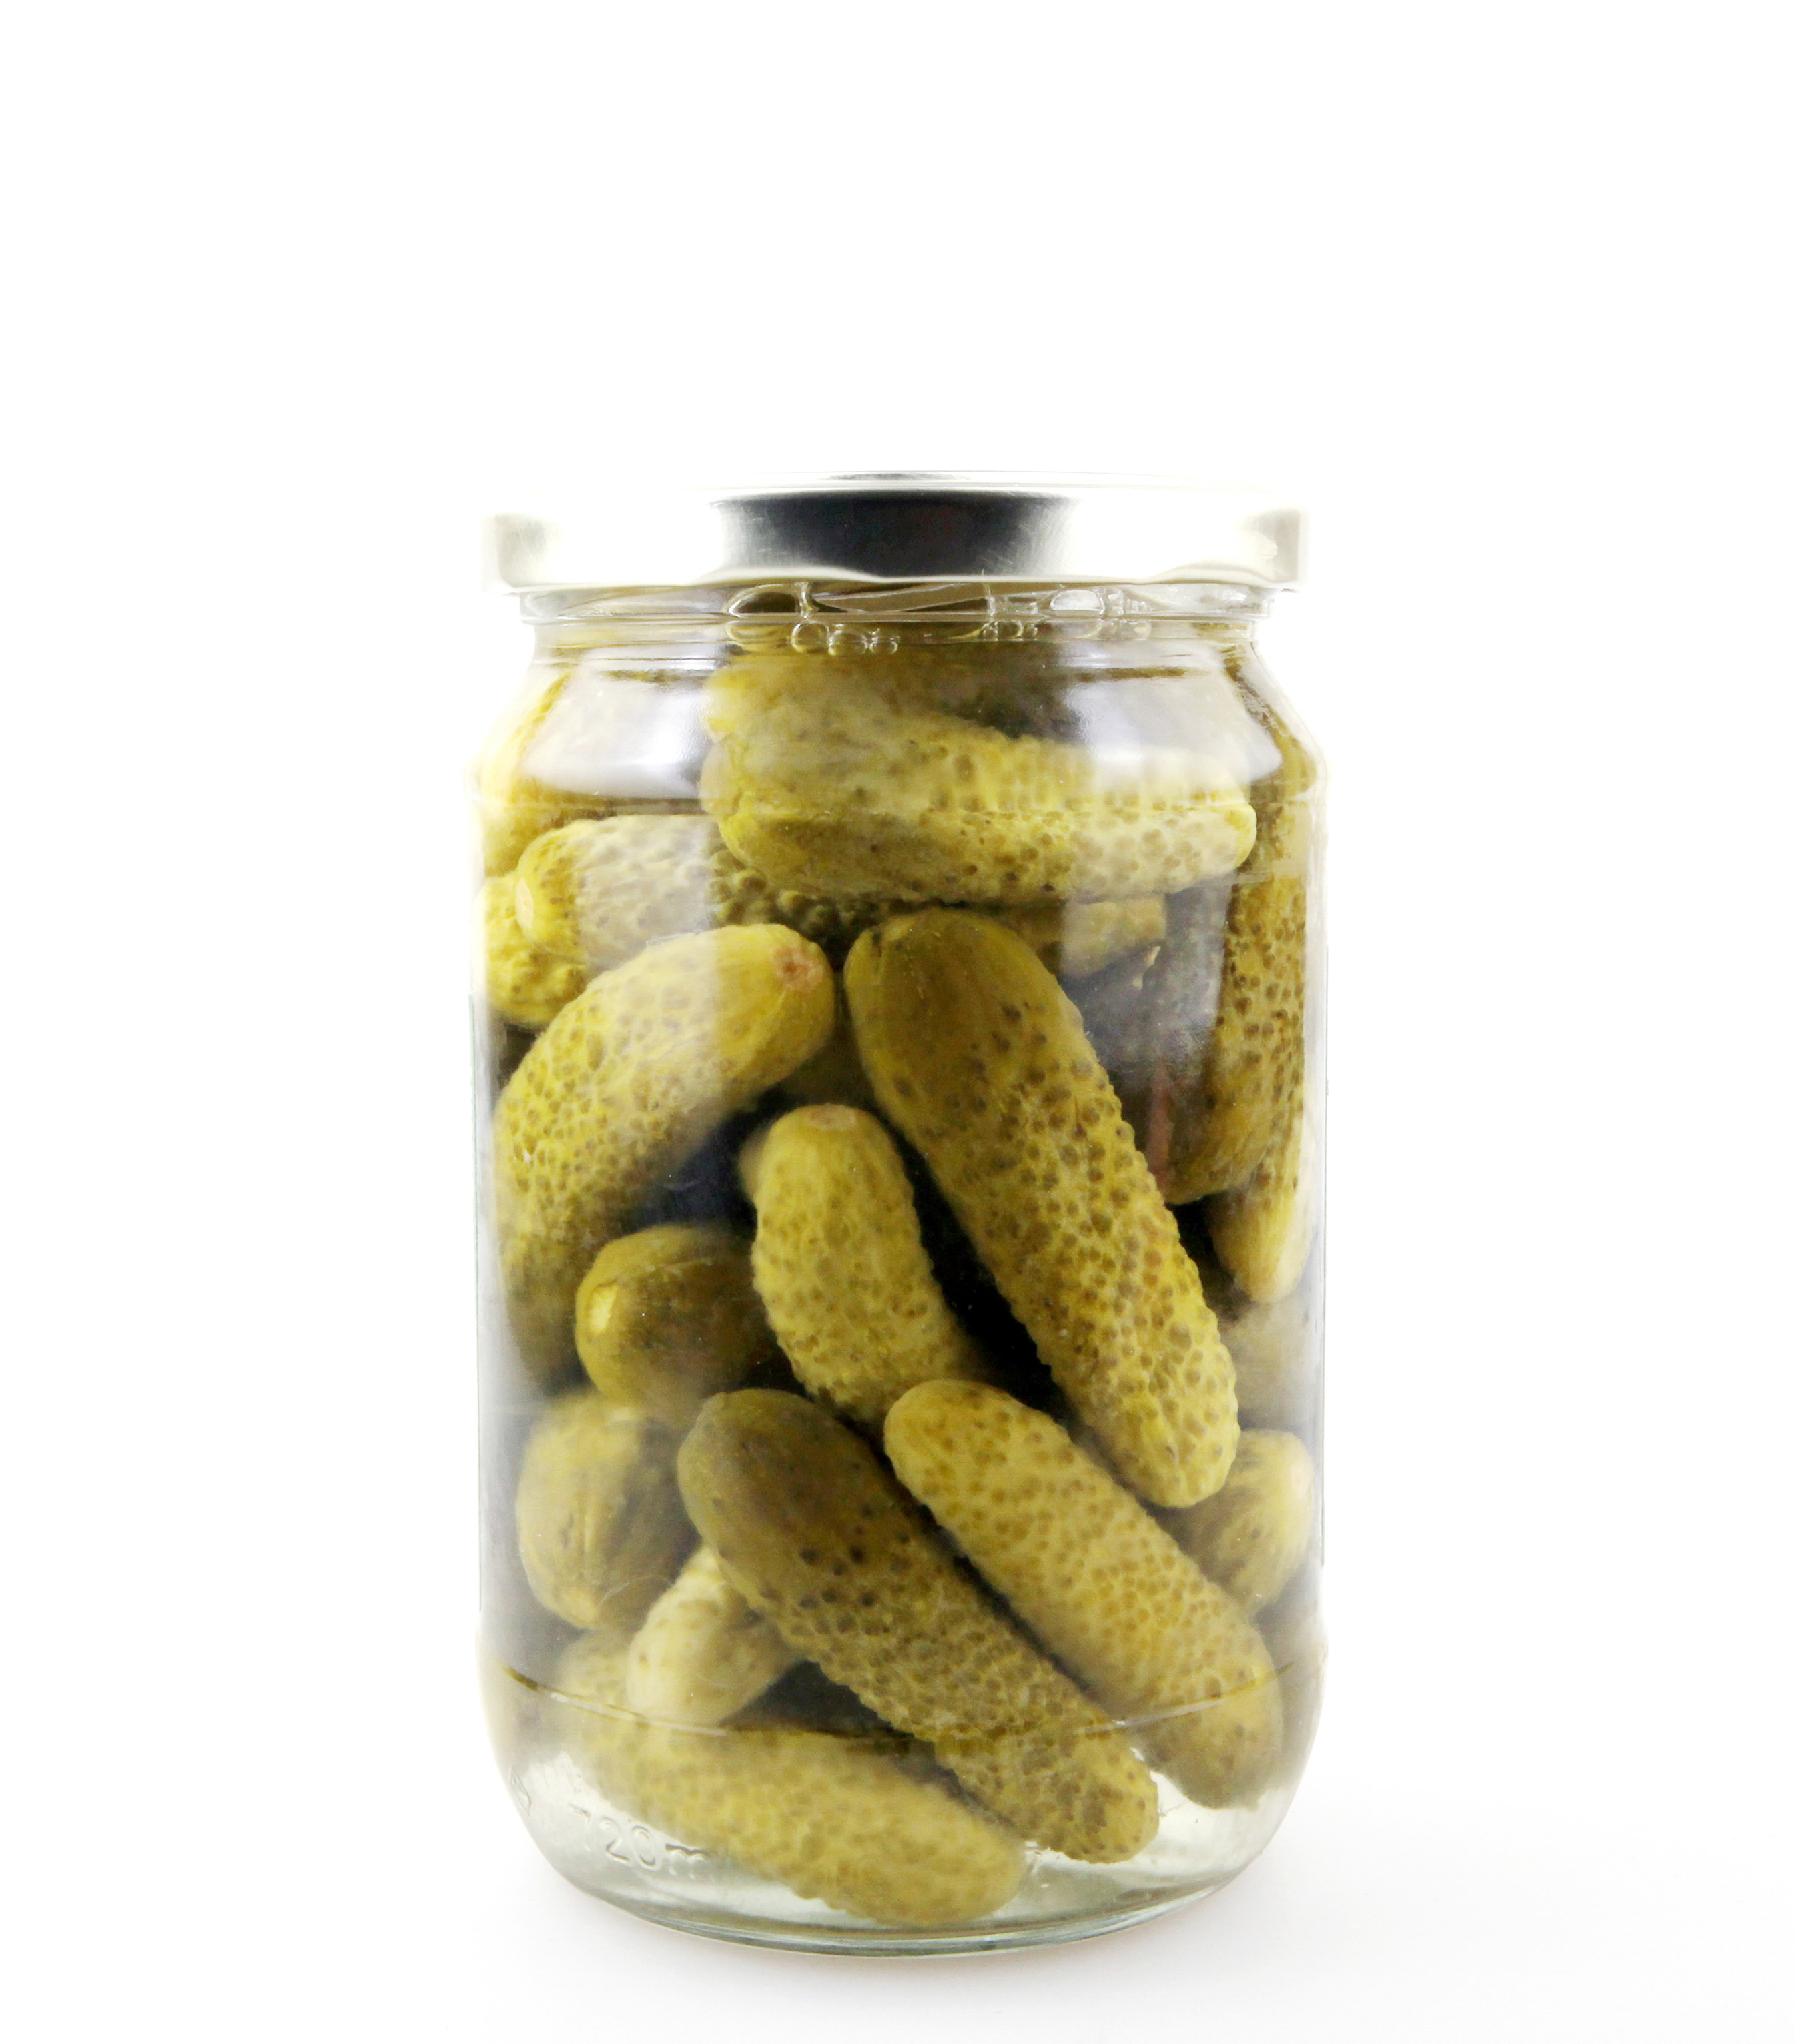 a jar of pickles